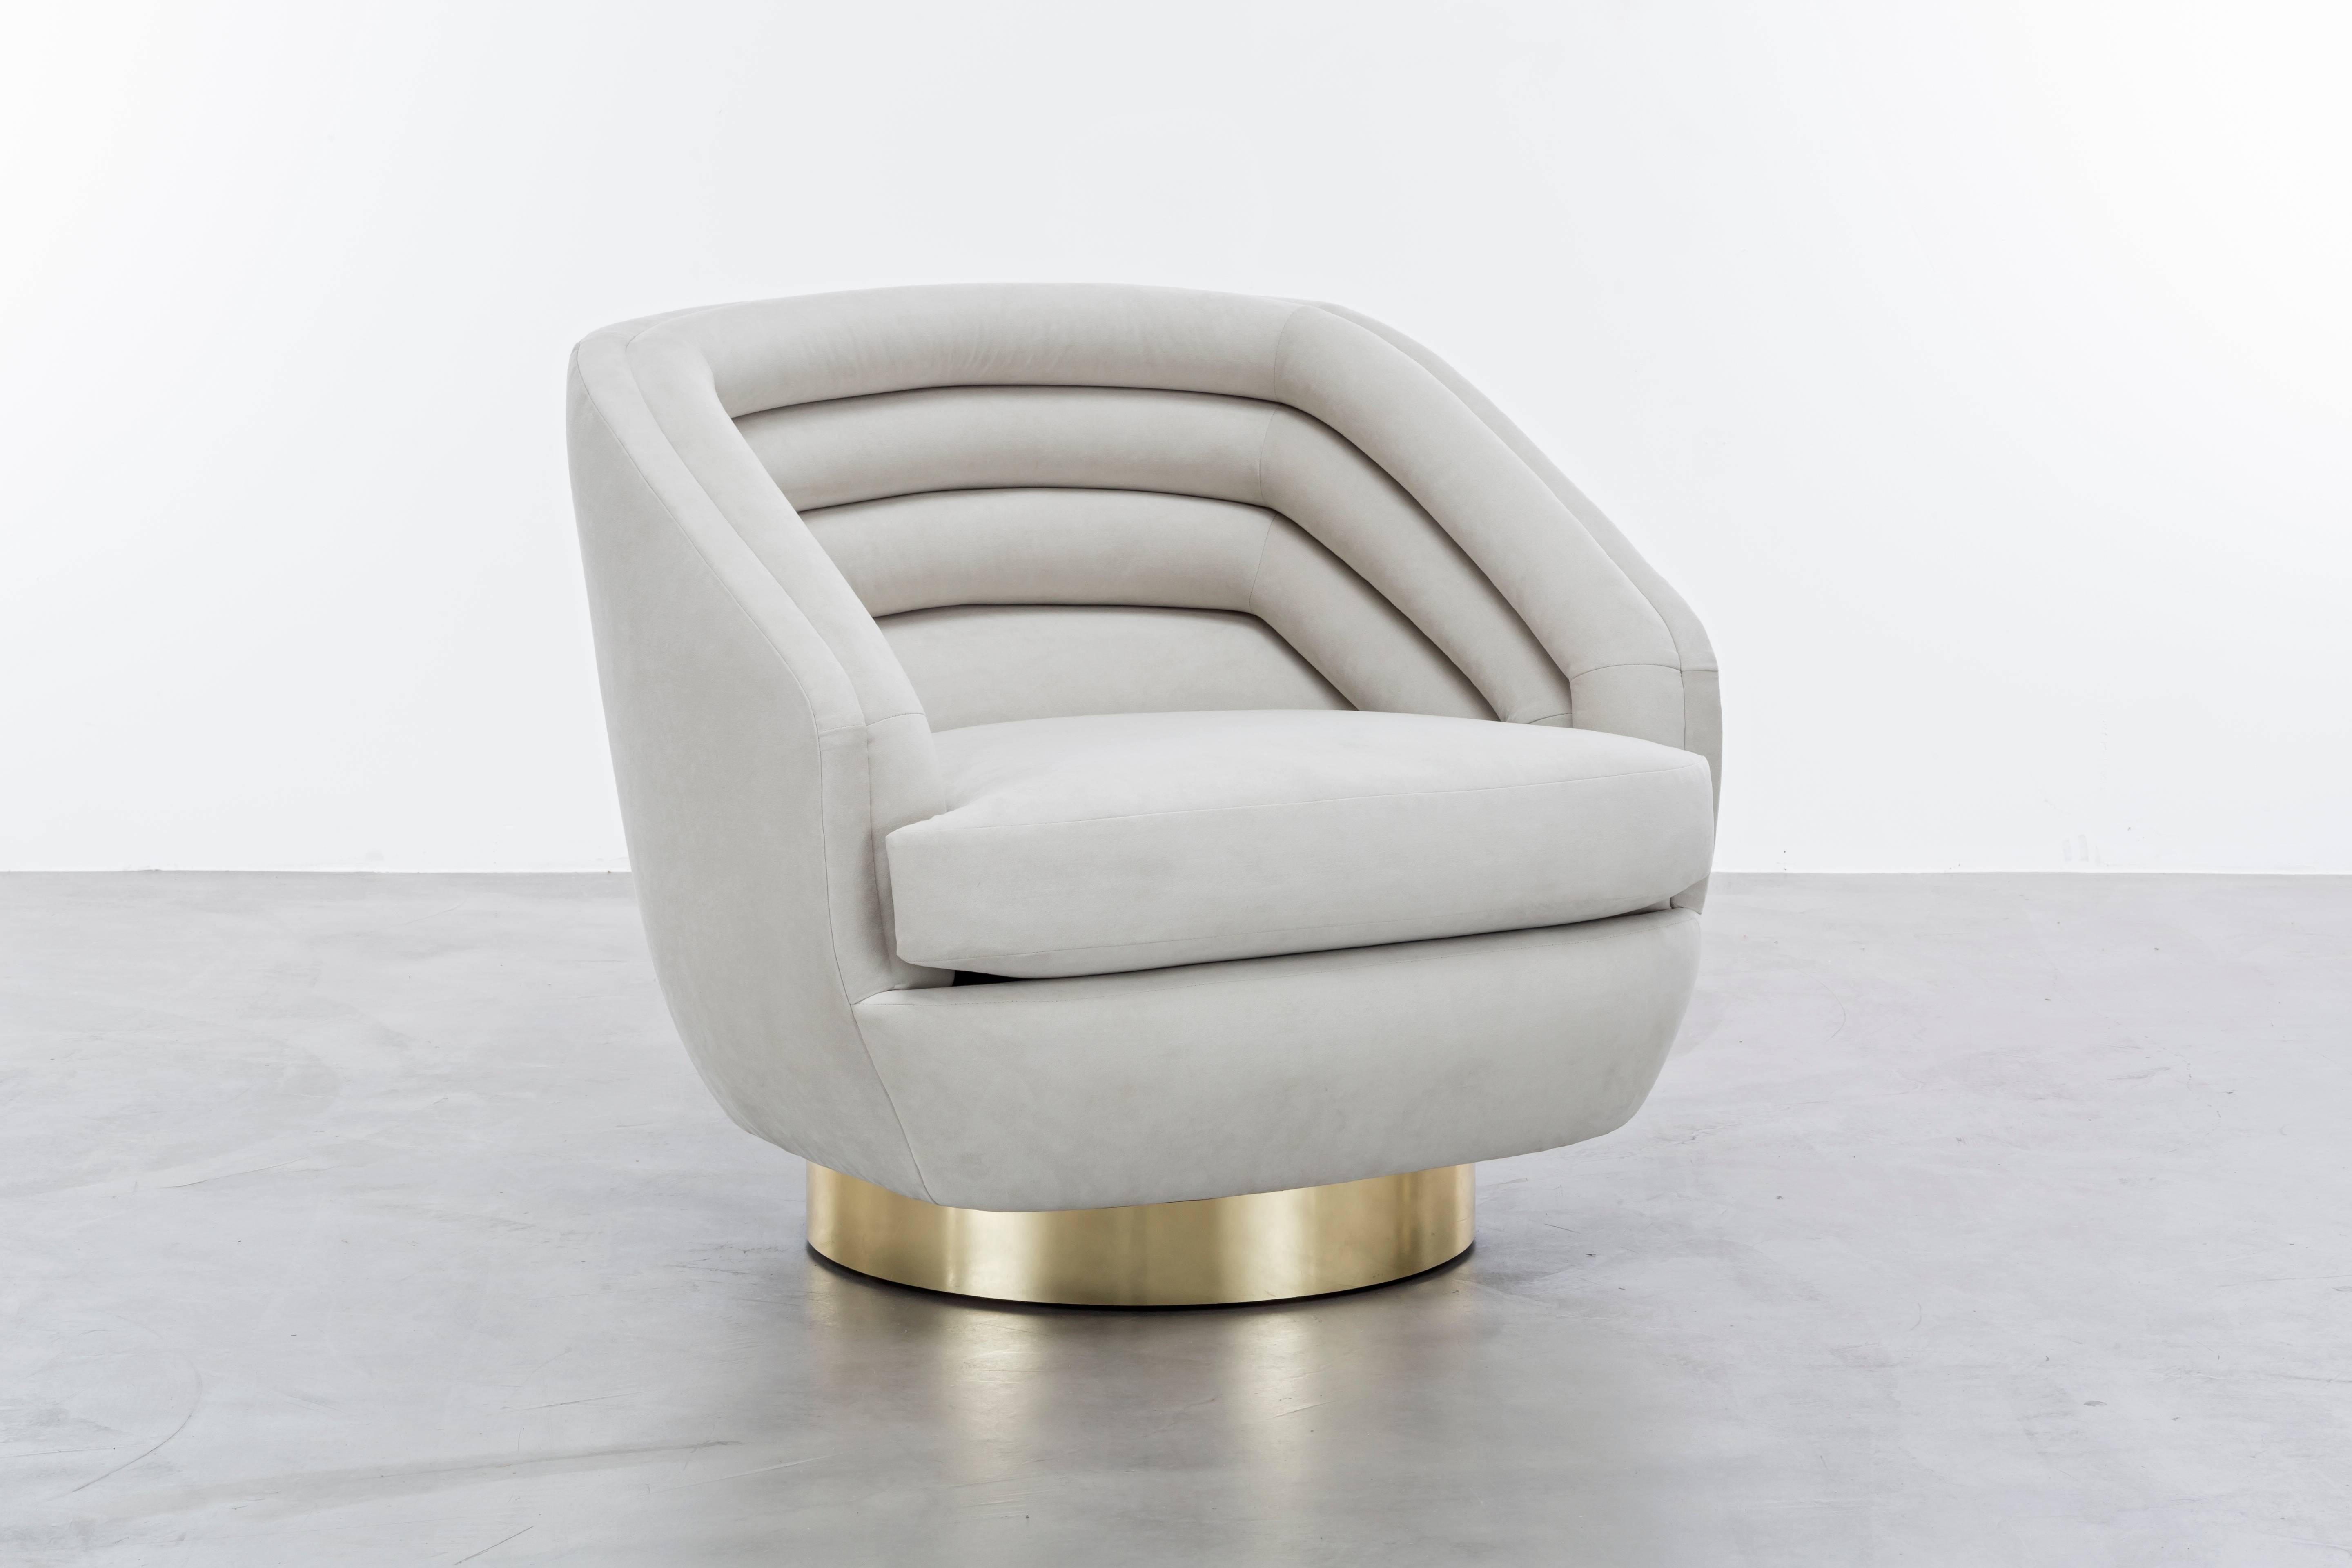 RAOUL DREHSTUHL  - Moderner Ultra-Wildleder-Drehstuhl mit Messingfuß

Der Raoul Chair ist ein luxuriöses und stilvolles Möbelstück, das von dem ikonischen Modedesigner Jean Paul Gaultier inspiriert ist. Der Stuhl hat horizontale Samtrillen, die ihm